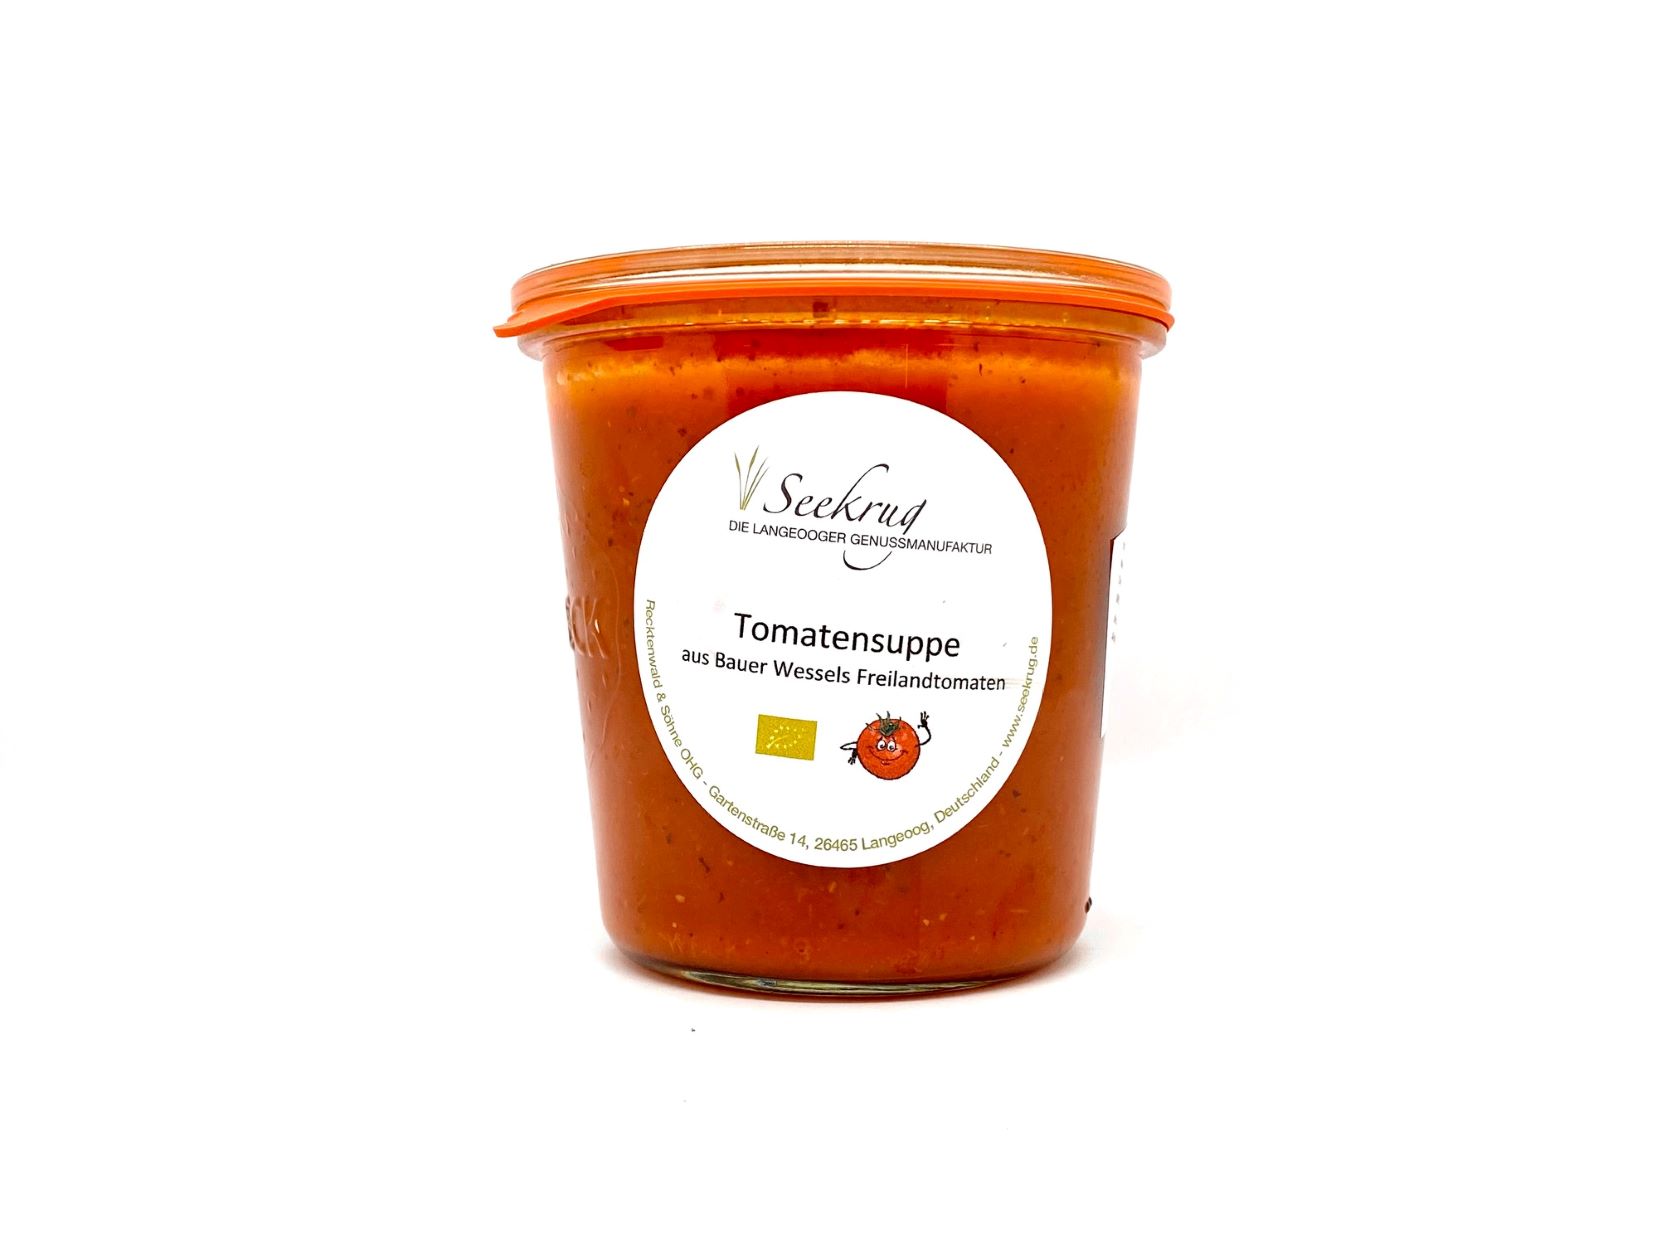 Tomatensuppe von Bauer Wessels Freilandtomaten - 500g